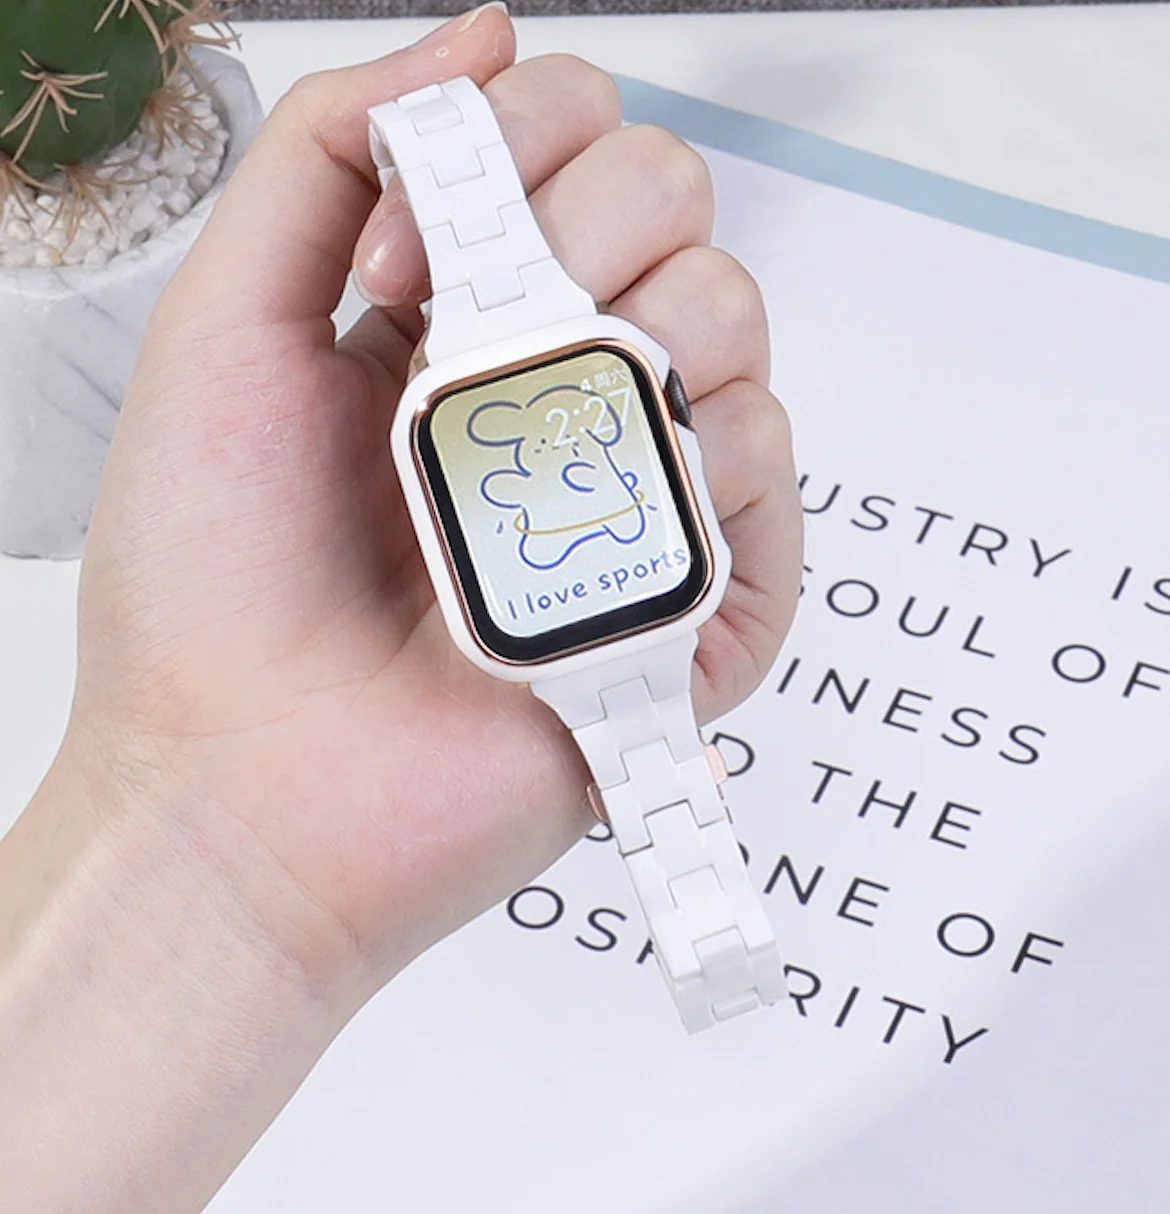 Применимо к женскому ремешку Apple watch, модному индивидуальному однотонному трендовому женскому ремешку для часов с узкой талией из ПК